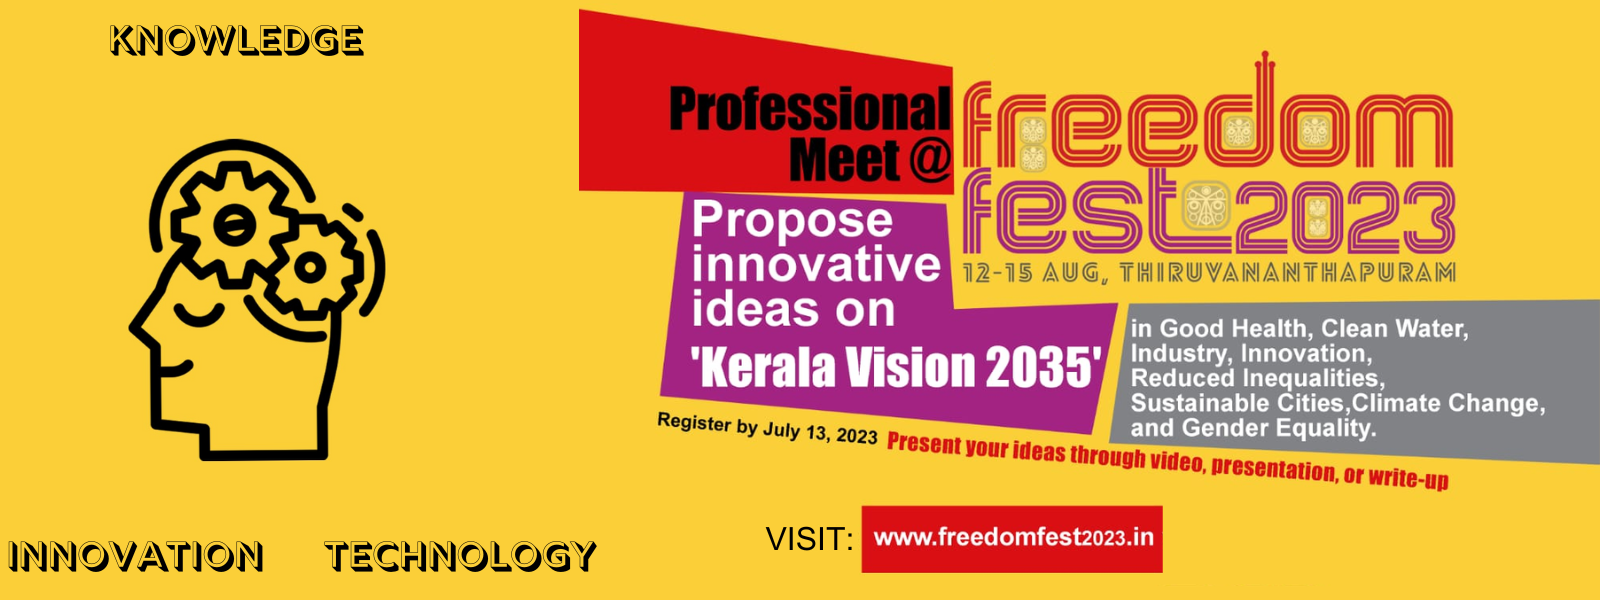 KITE poster for the Freedom festival